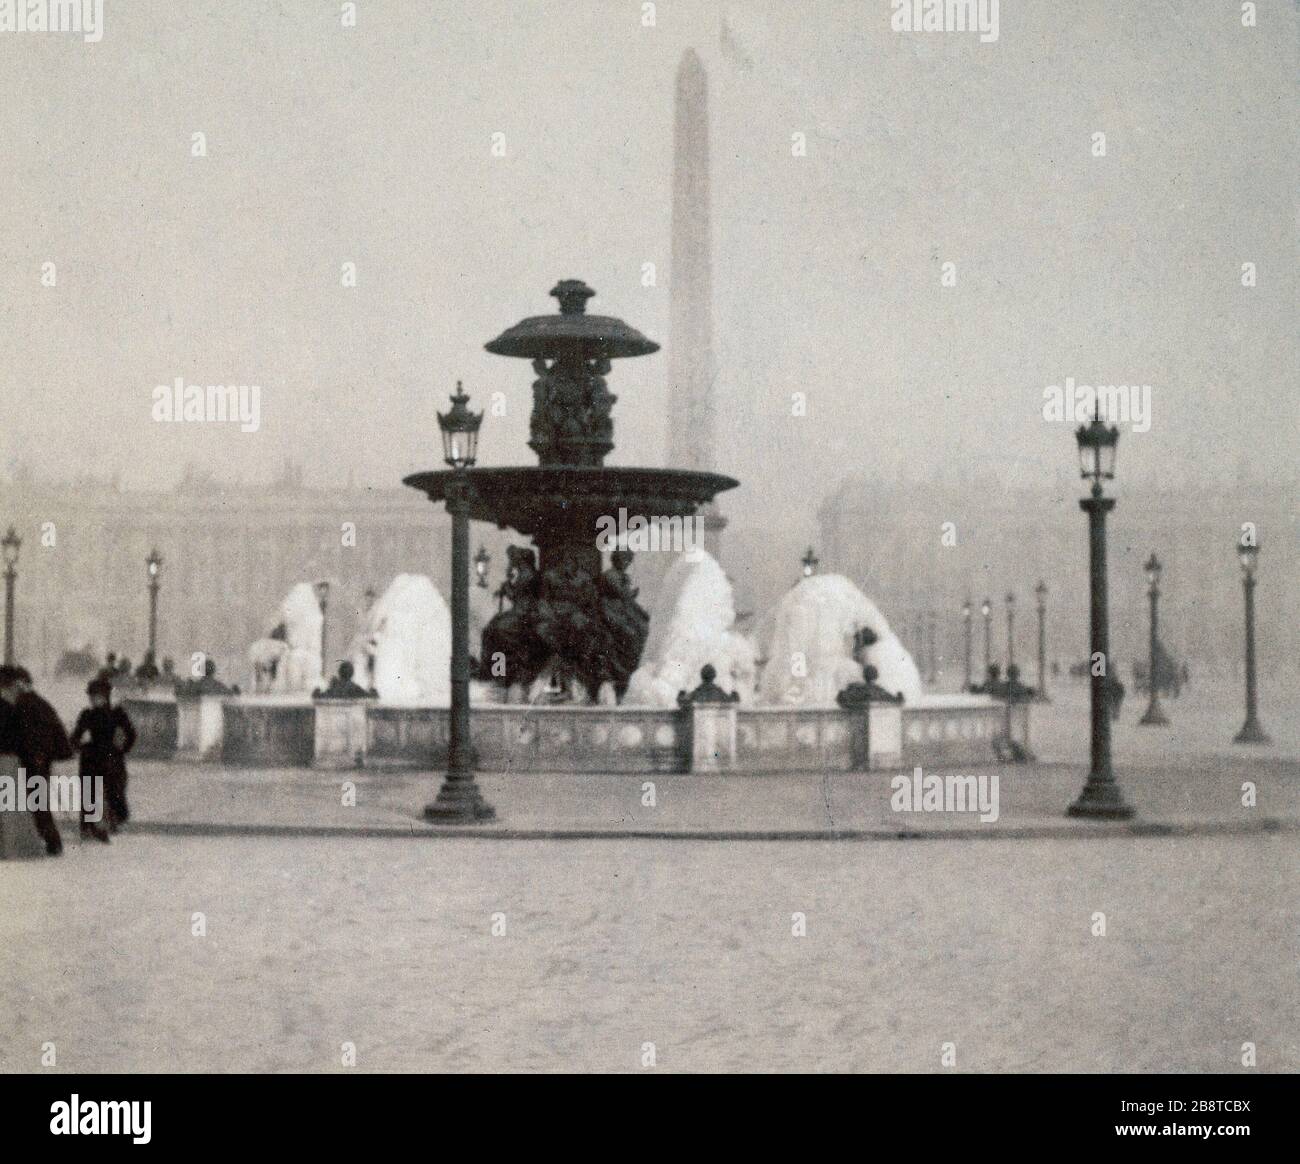 PLACE de la CONCORDE Place de la Concorde. Paris (VIIIème arr.), hiver 1890-1899. Paris, musée Carnavalet. Stockfoto